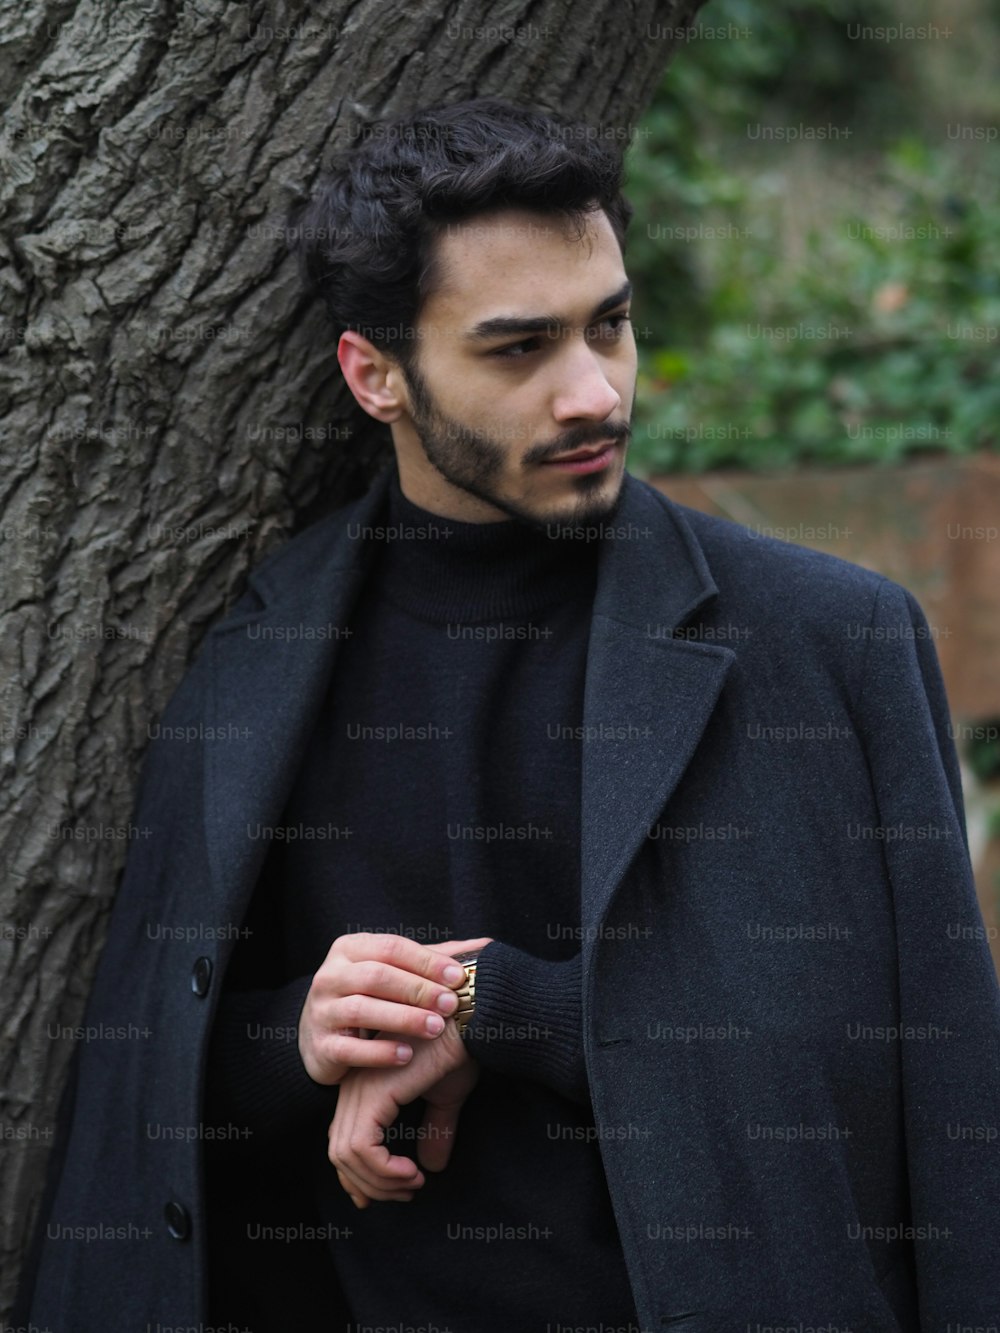 Ein Mann steht neben einem Baum und trägt einen schwarzen Mantel